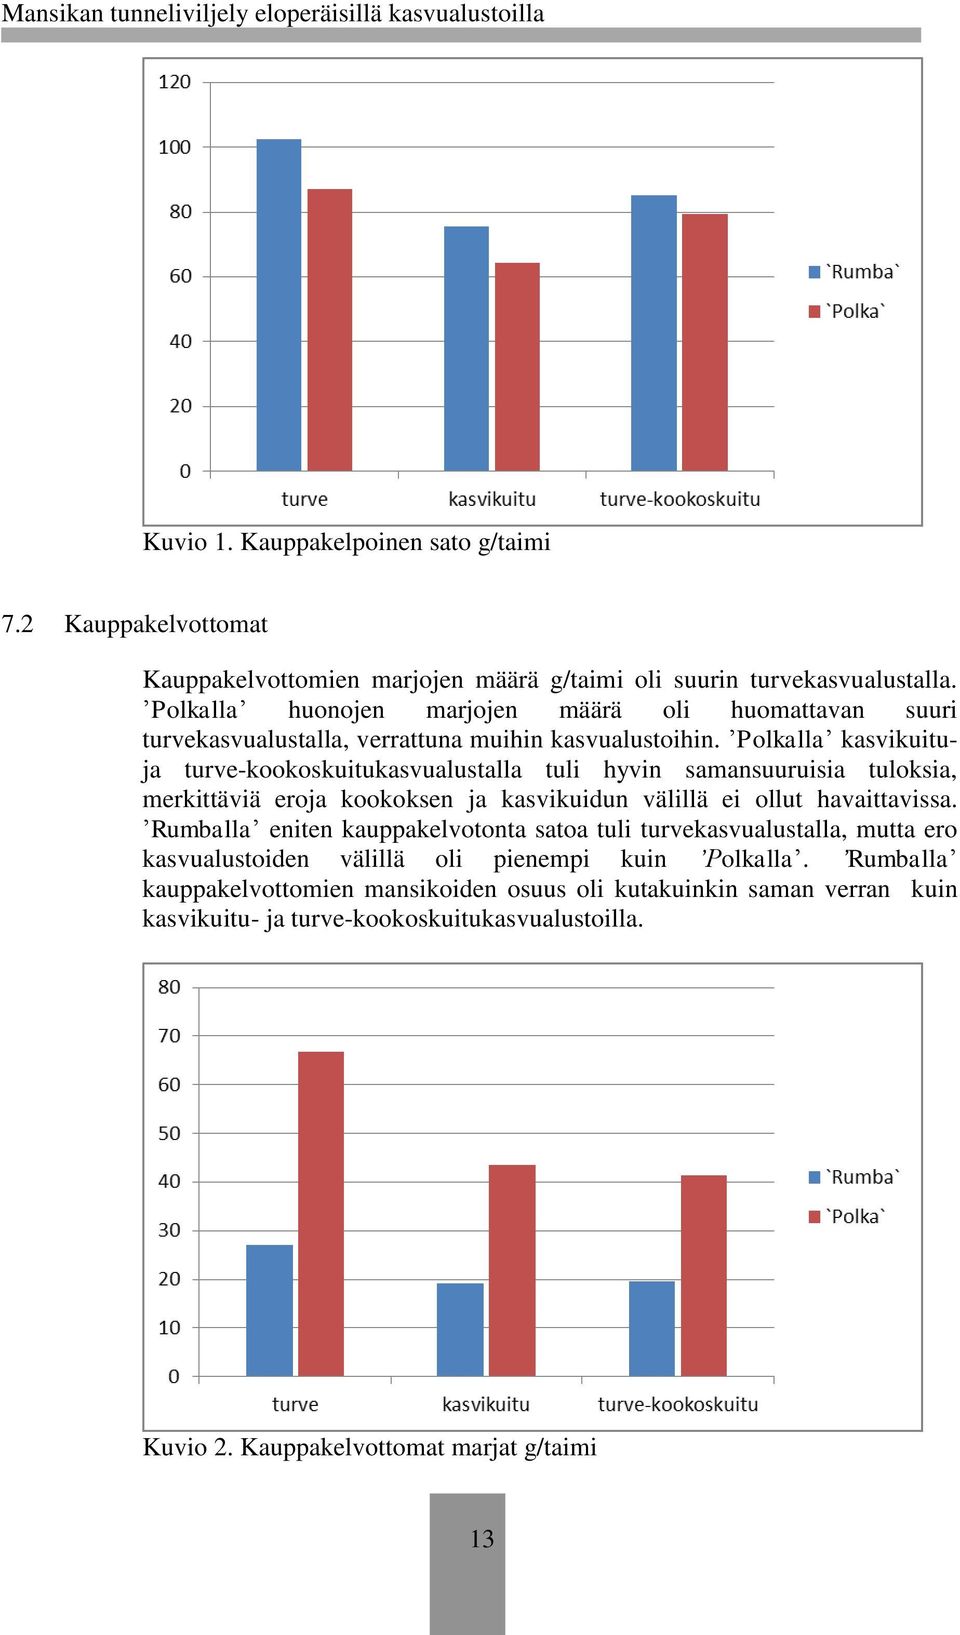 Polkalla kasvikuituja turve-kookoskuitukasvualustalla tuli hyvin samansuuruisia tuloksia, merkittäviä eroja kookoksen ja kasvikuidun välillä ei ollut havaittavissa.